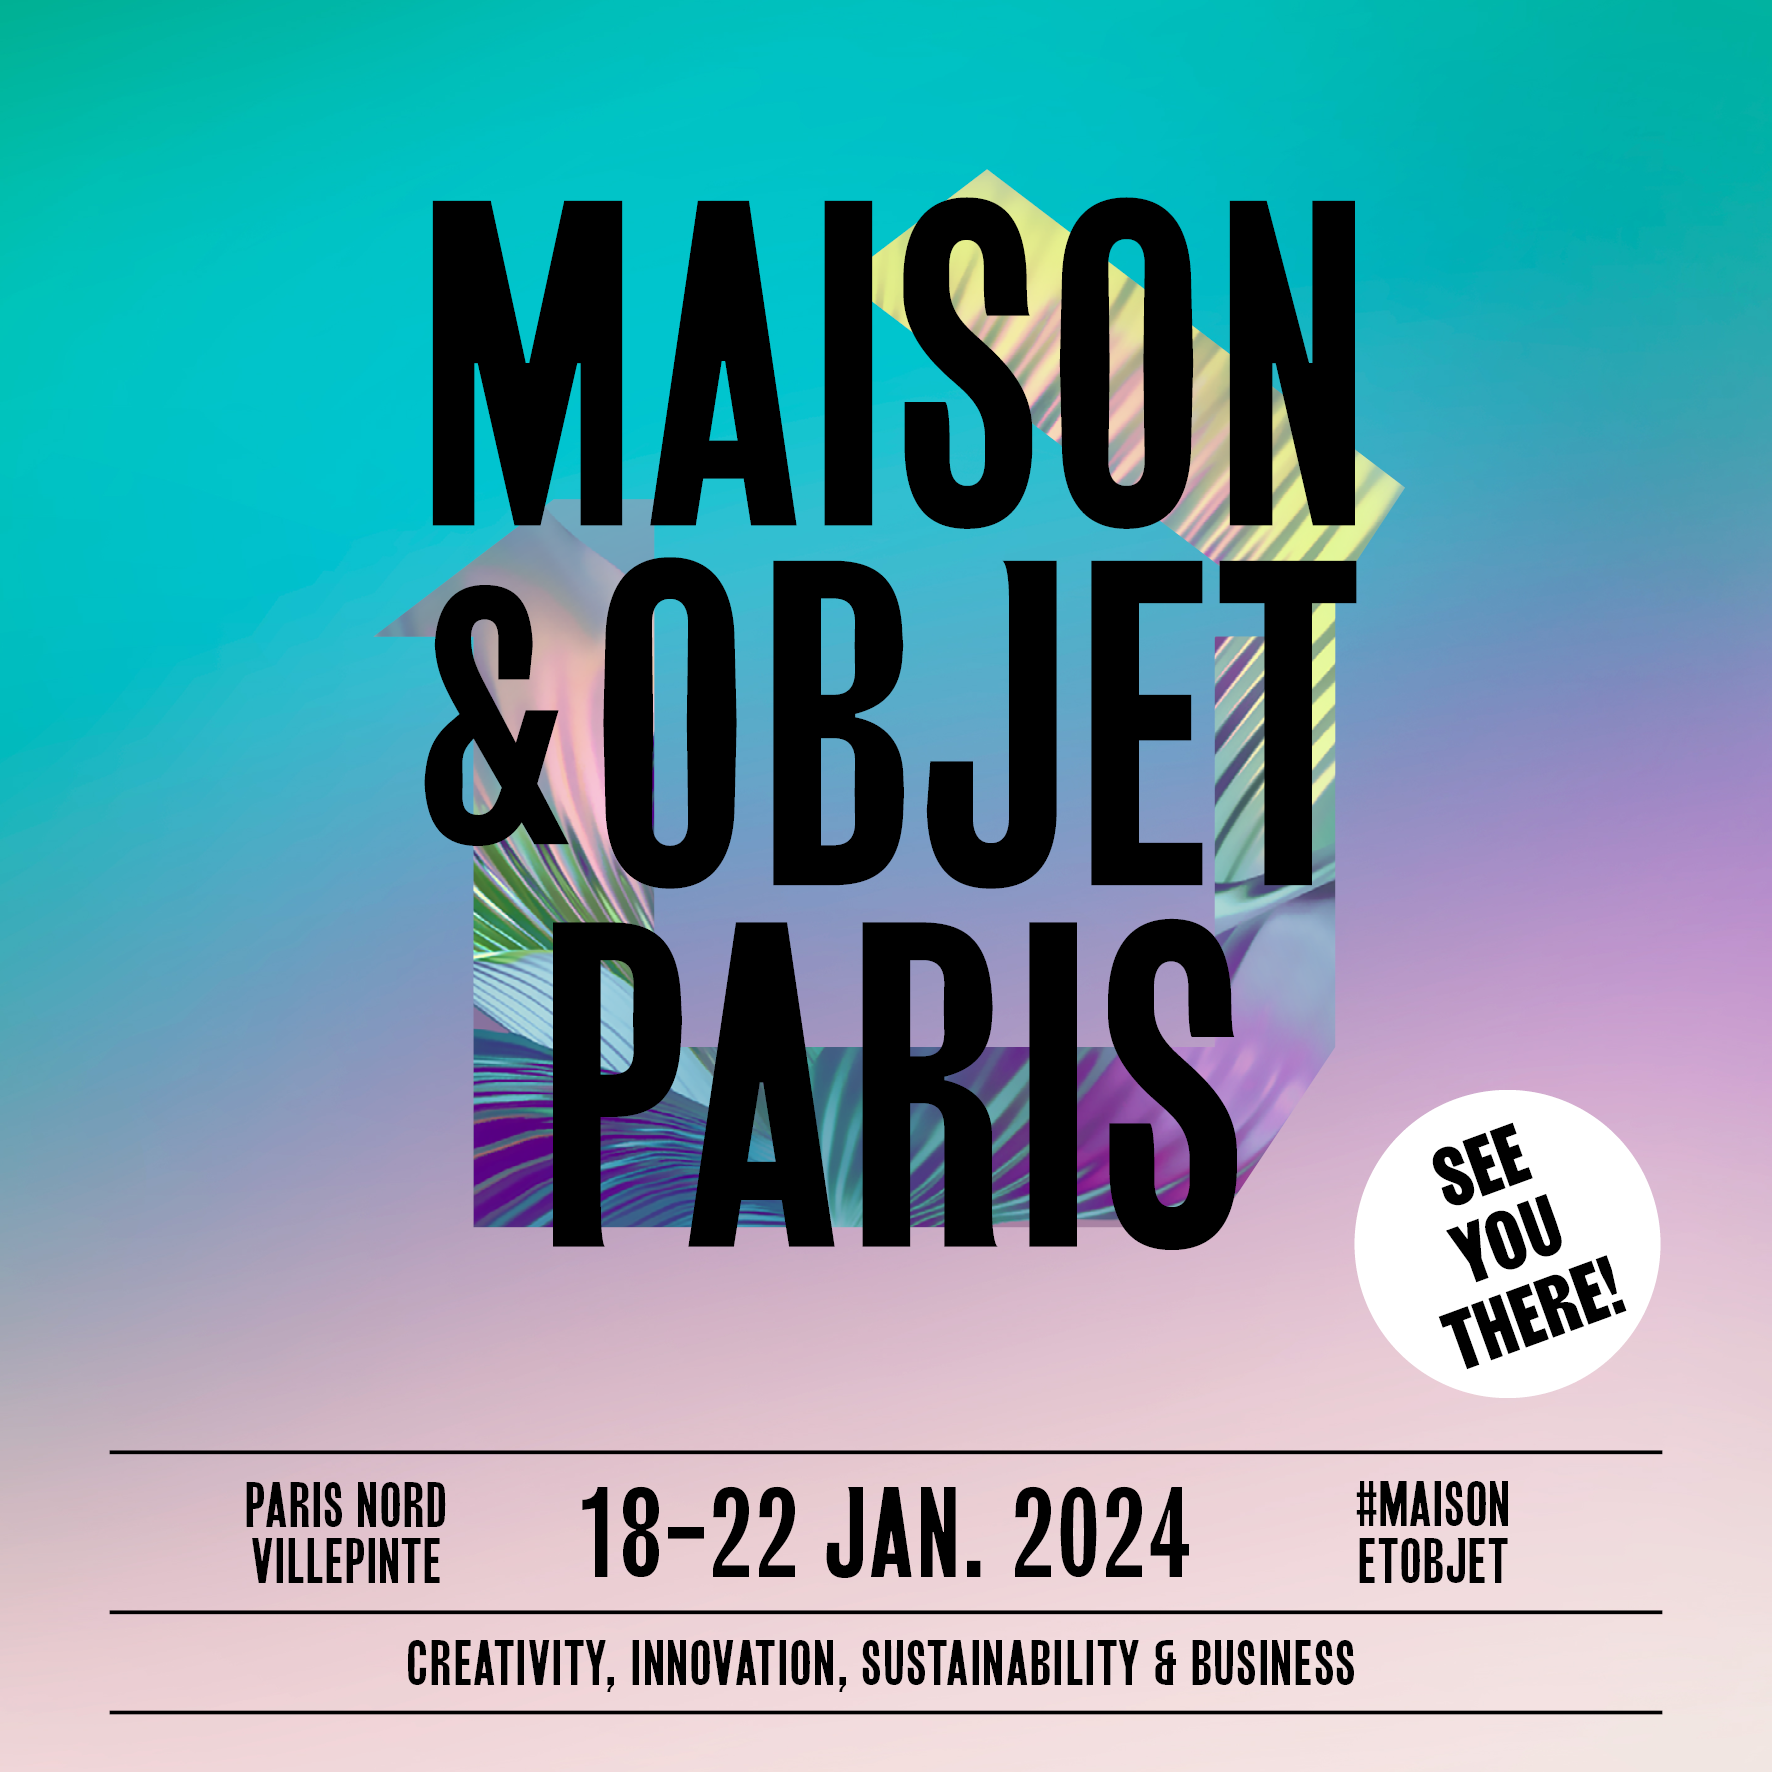 Maison & Objet 2024 : an inpiring start to the year